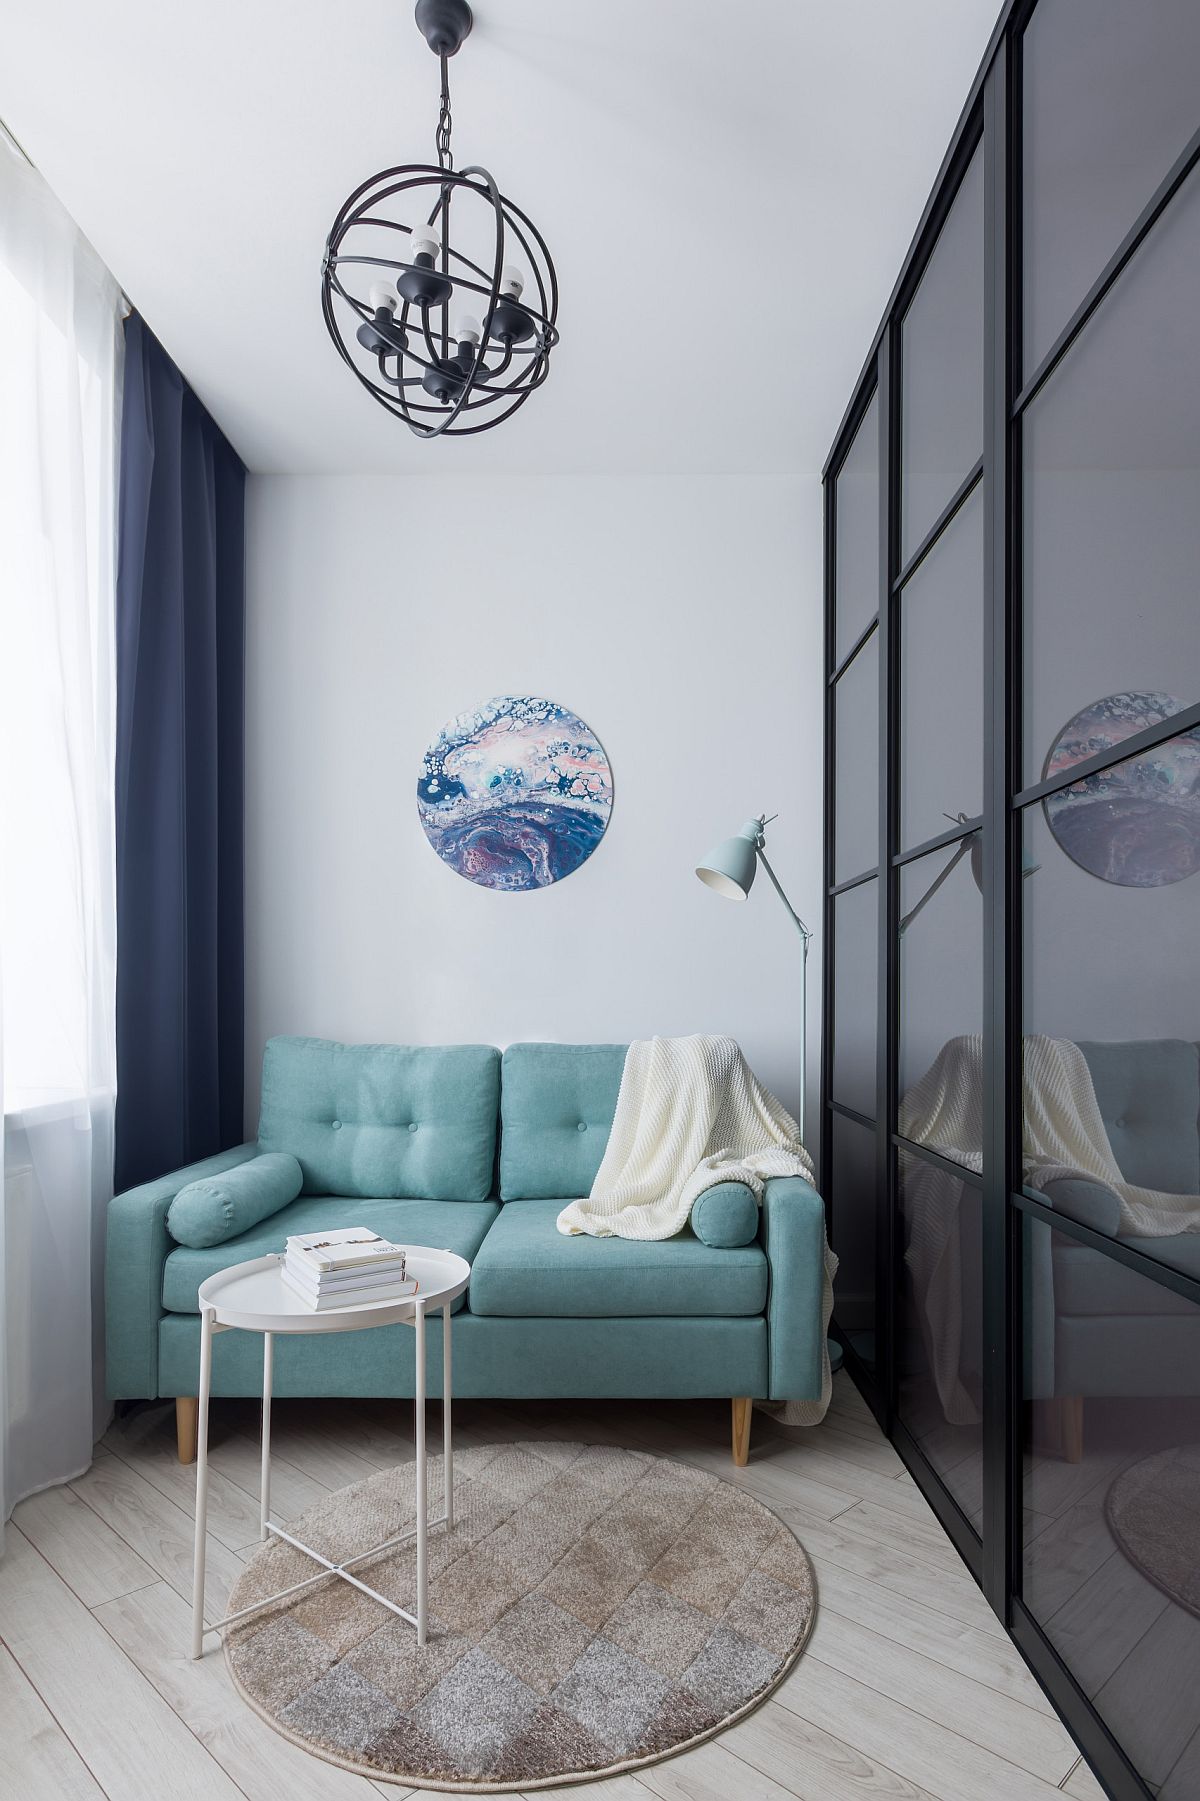 Chiếc ghế sofa màu xanh dương nhạt trong khu vực tiếp khách của căn hộ kiểu studio siêu nhỏ. Sự lựa chọn gam màu dịu nhẹ cùng thảm trải sàn và bức tranh thủy mặc hình tròn mang đến cảm giác bình yên và thư thái vô cùng. 